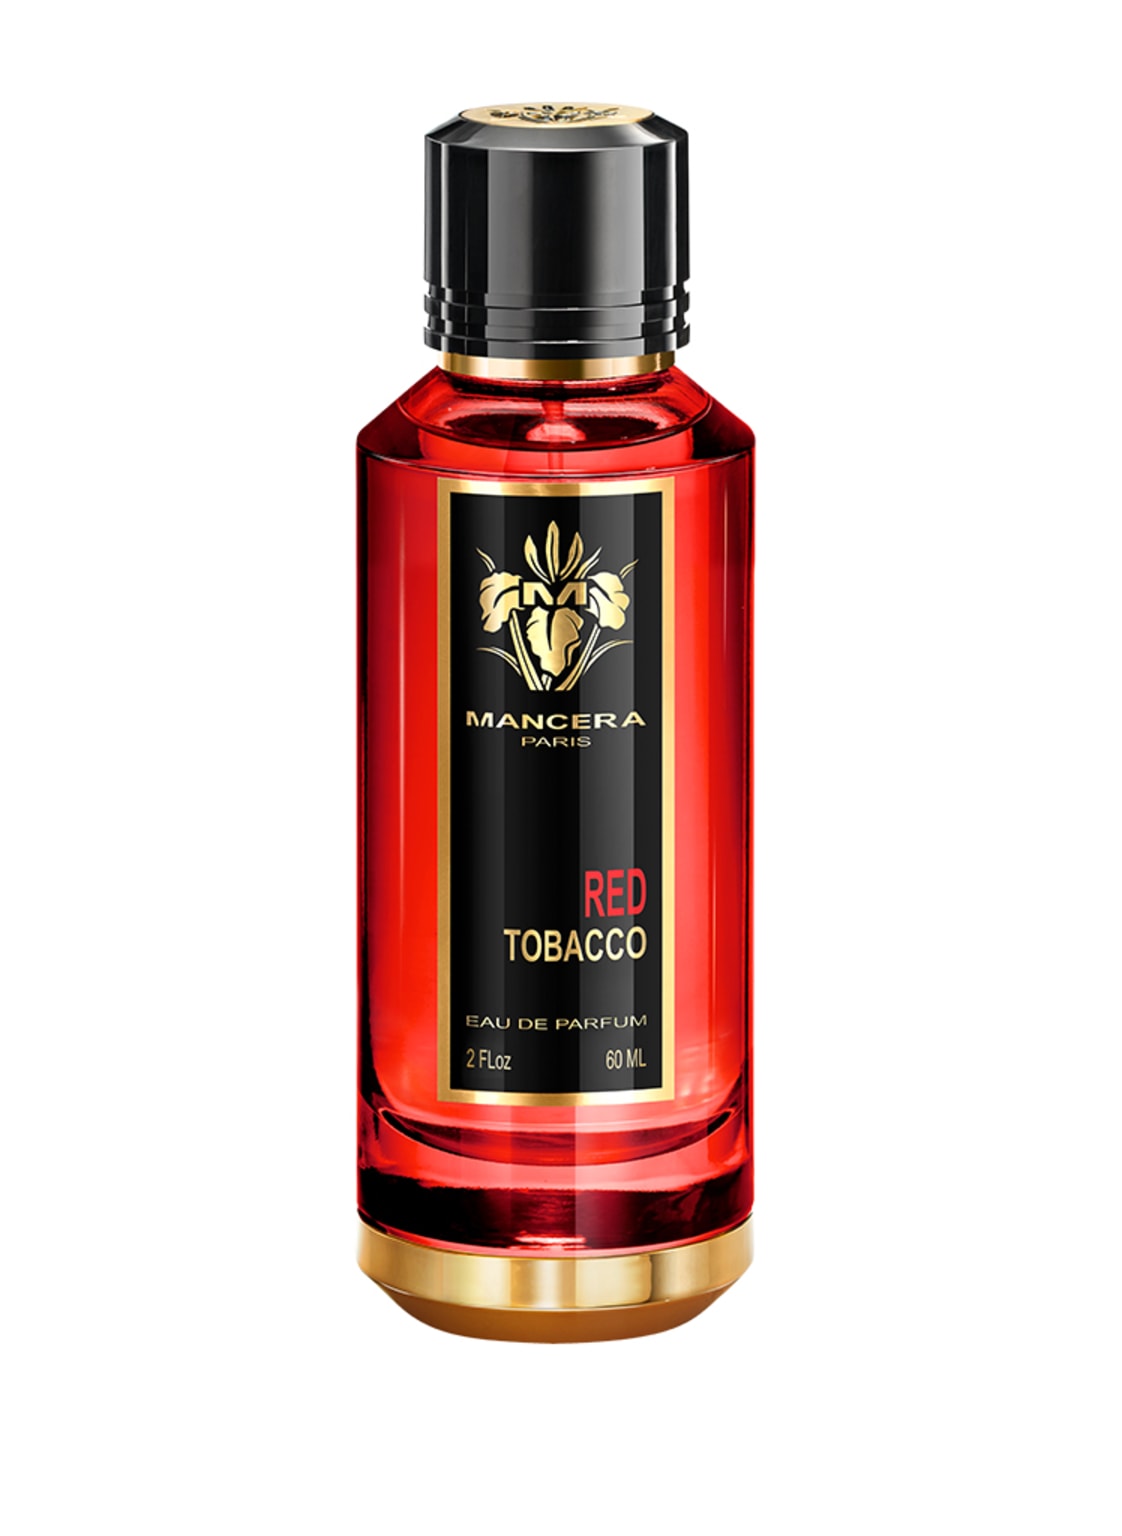 Mancera Red Tobacco Eau de Parfum 60 ml von MANCERA